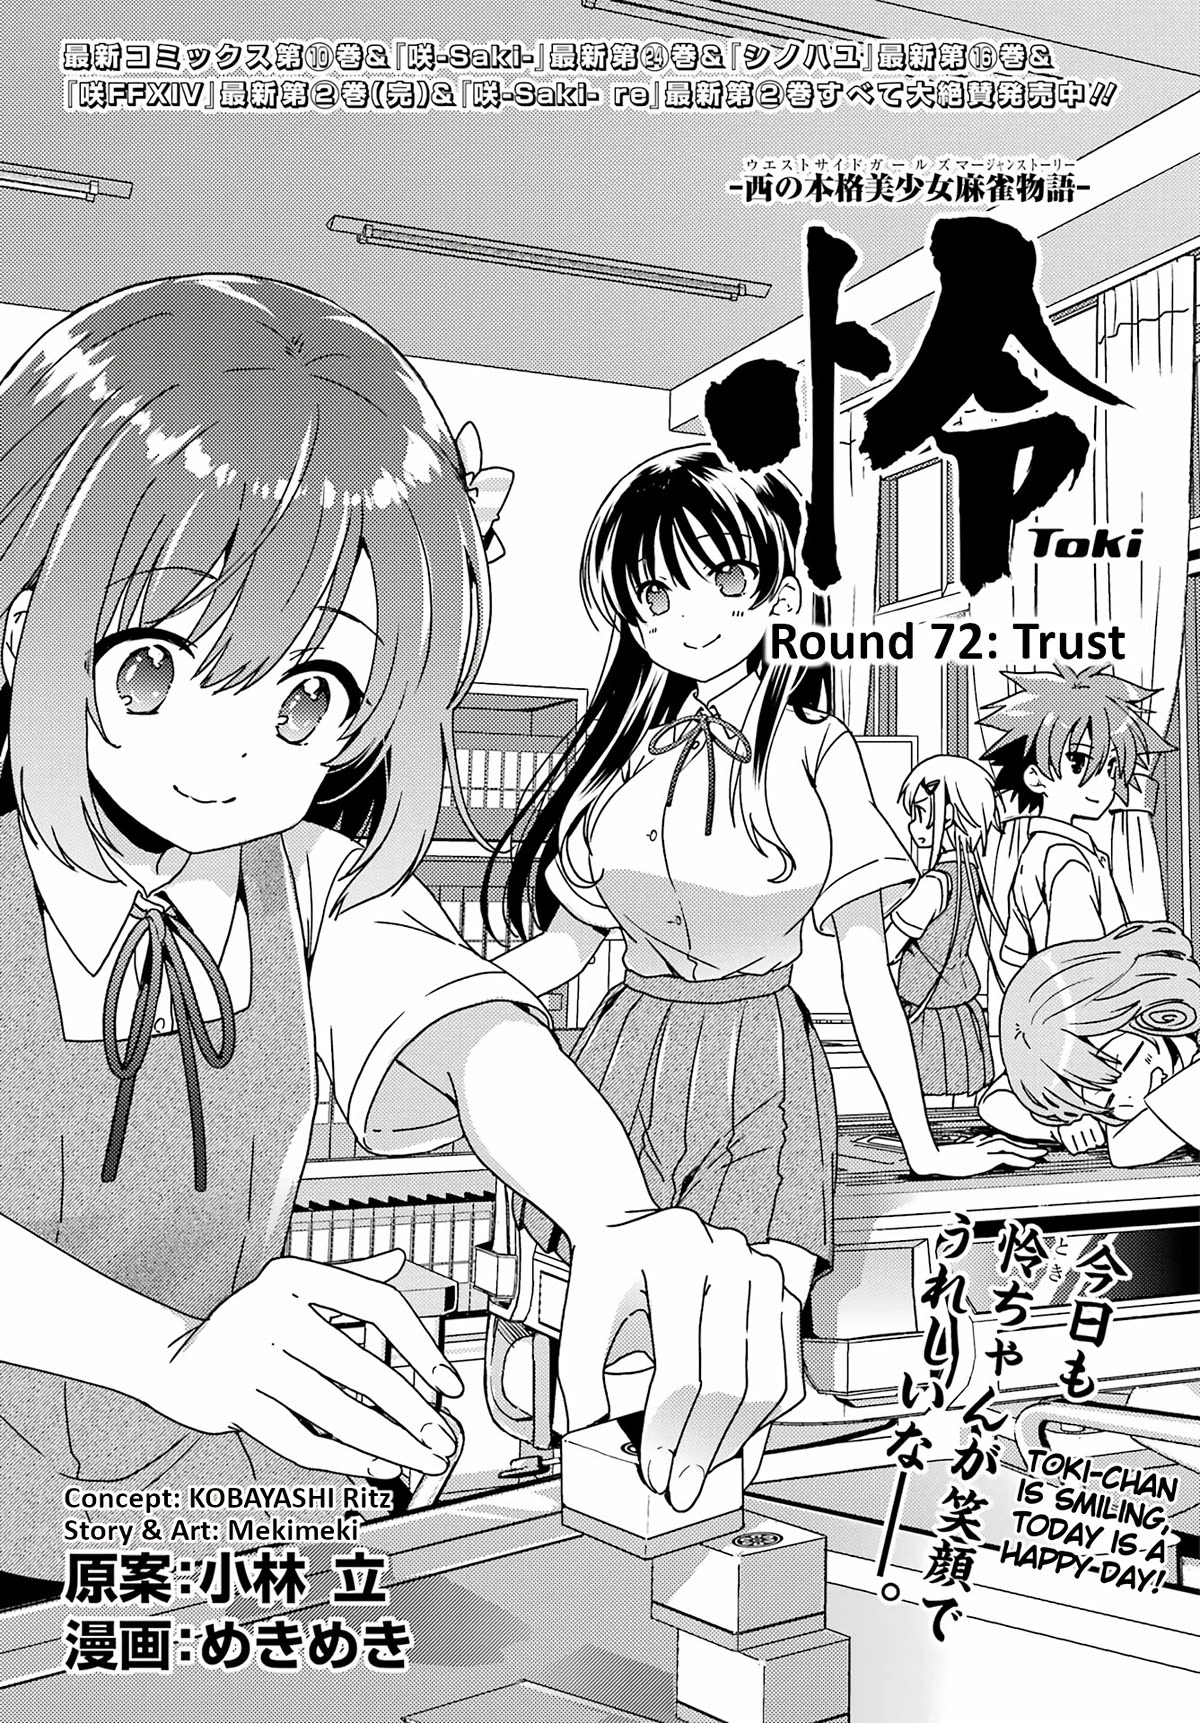 Toki (Kobayashi Ritz) Chapter 72: Trust - Picture 1